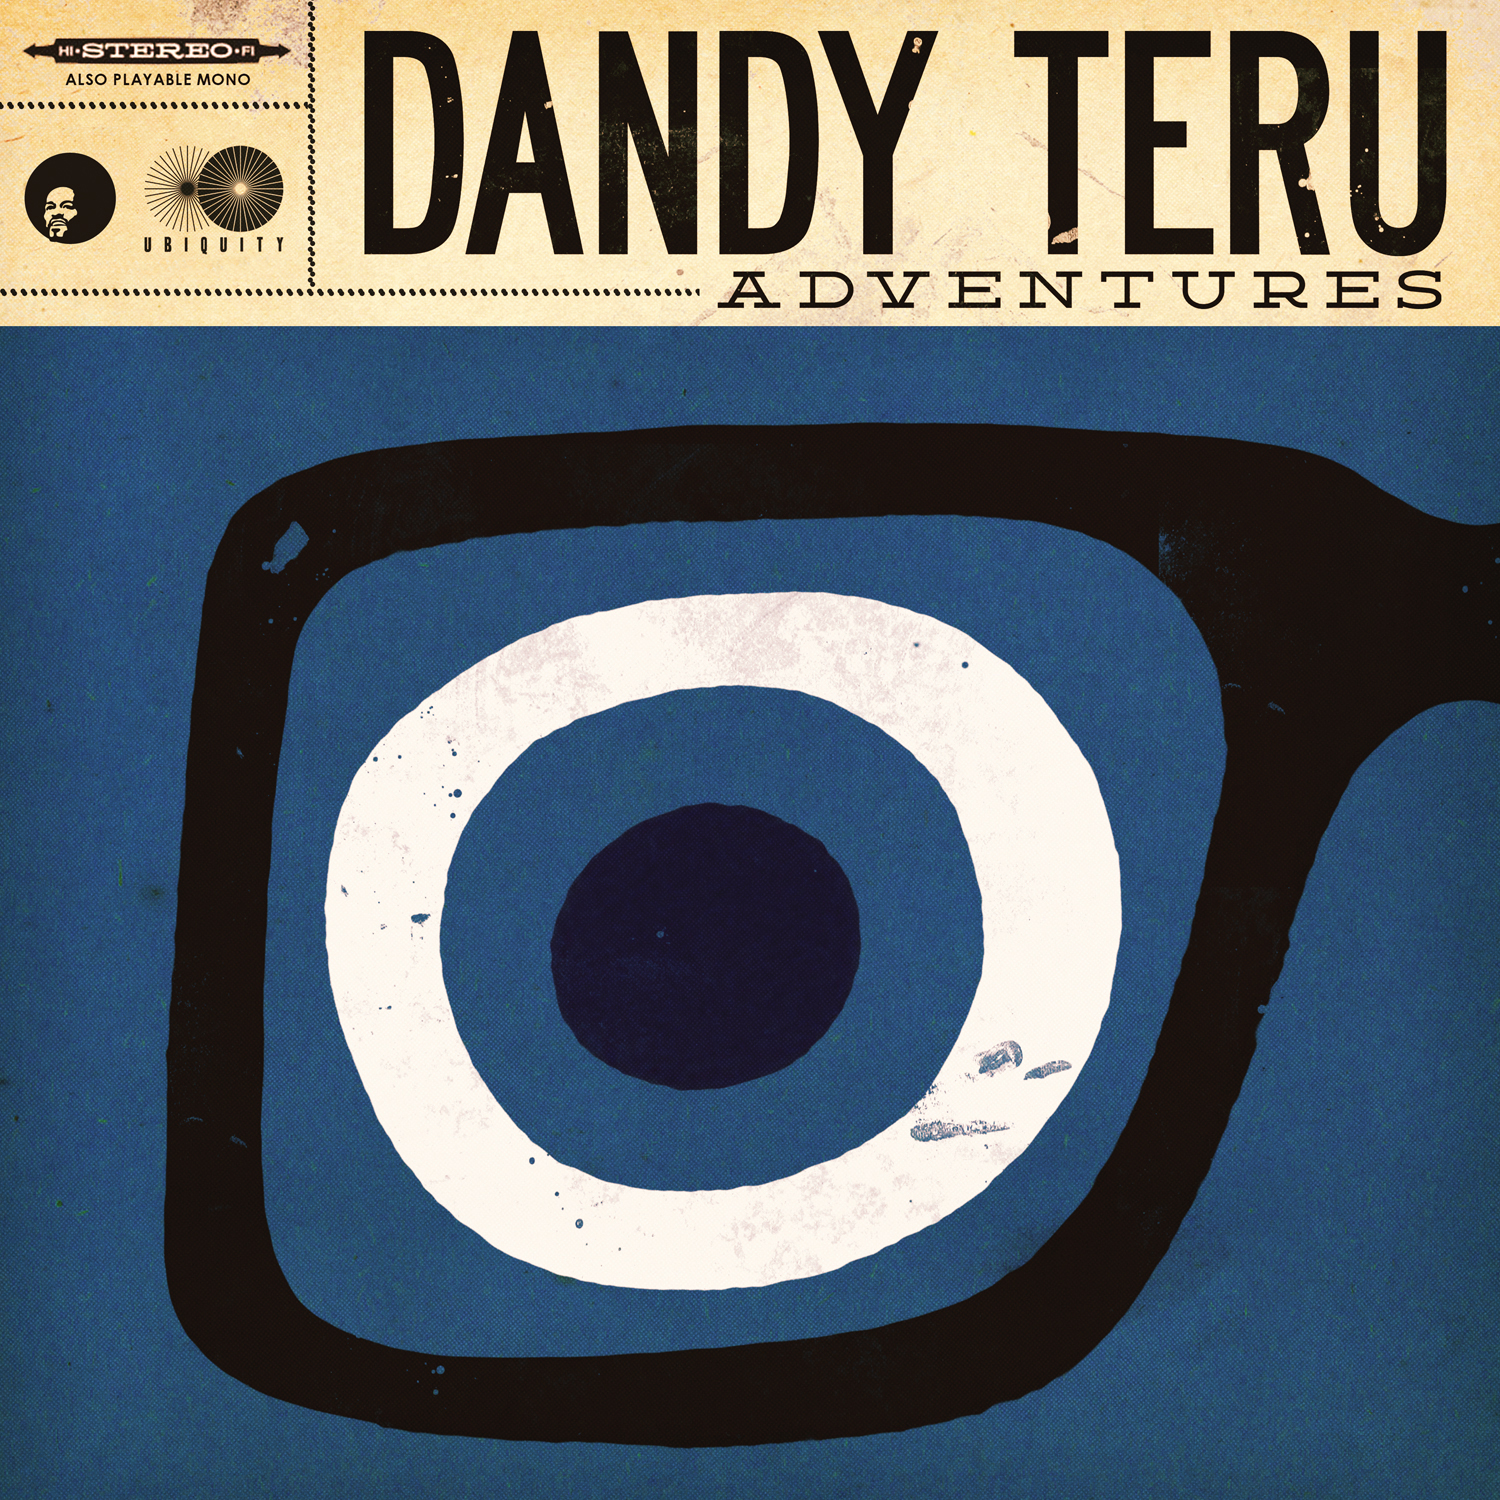 Dandy Teru "Adventures" Release 